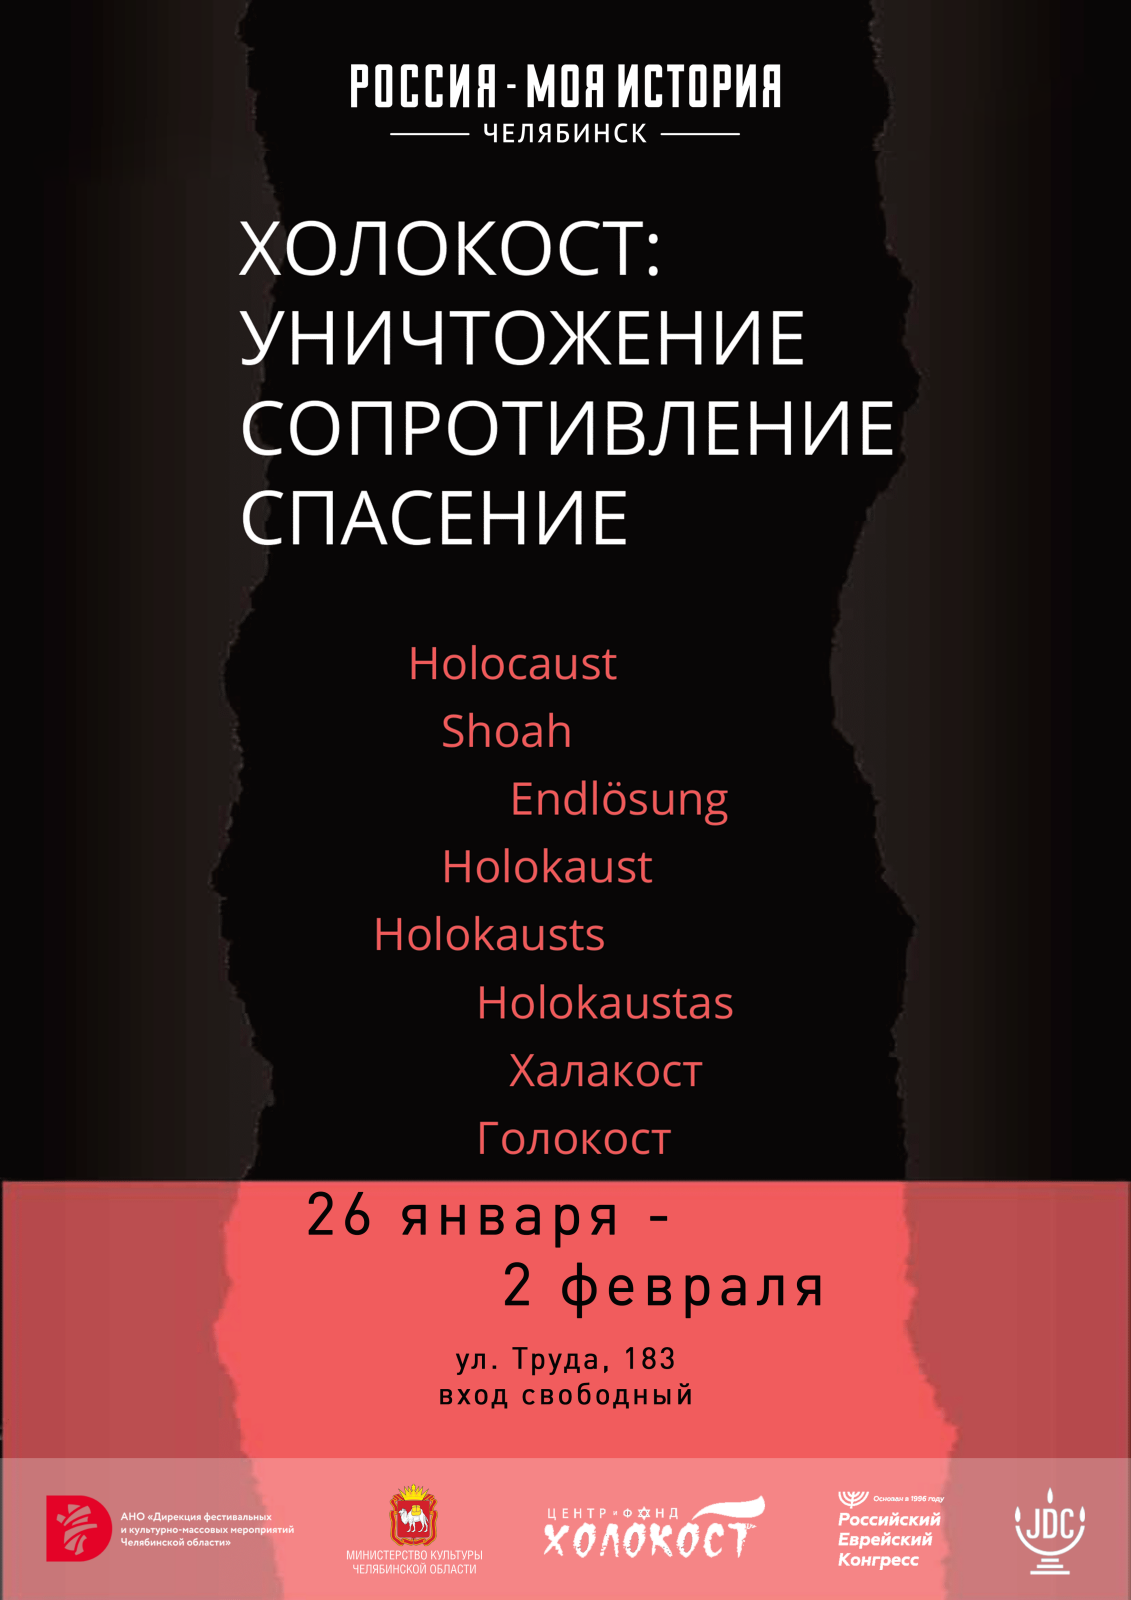 В Челябинске открывается мультимедийная выставка в память жертв Холокоста